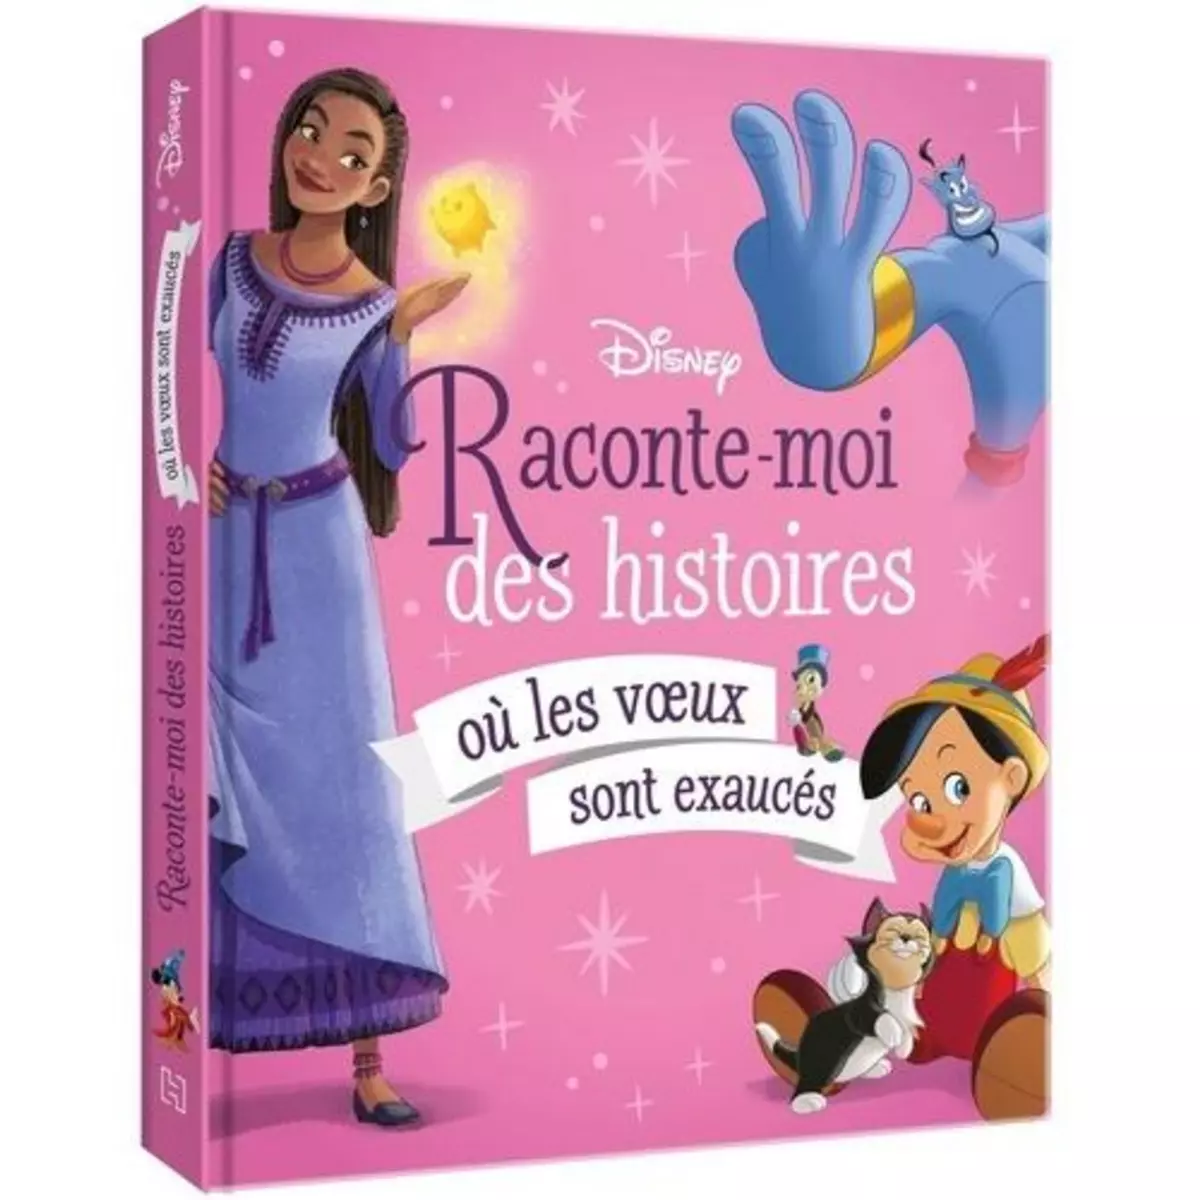  RACONTE-MOI DES HISTOIRES OU LES VOEUX SONT EXAUCES, Disney